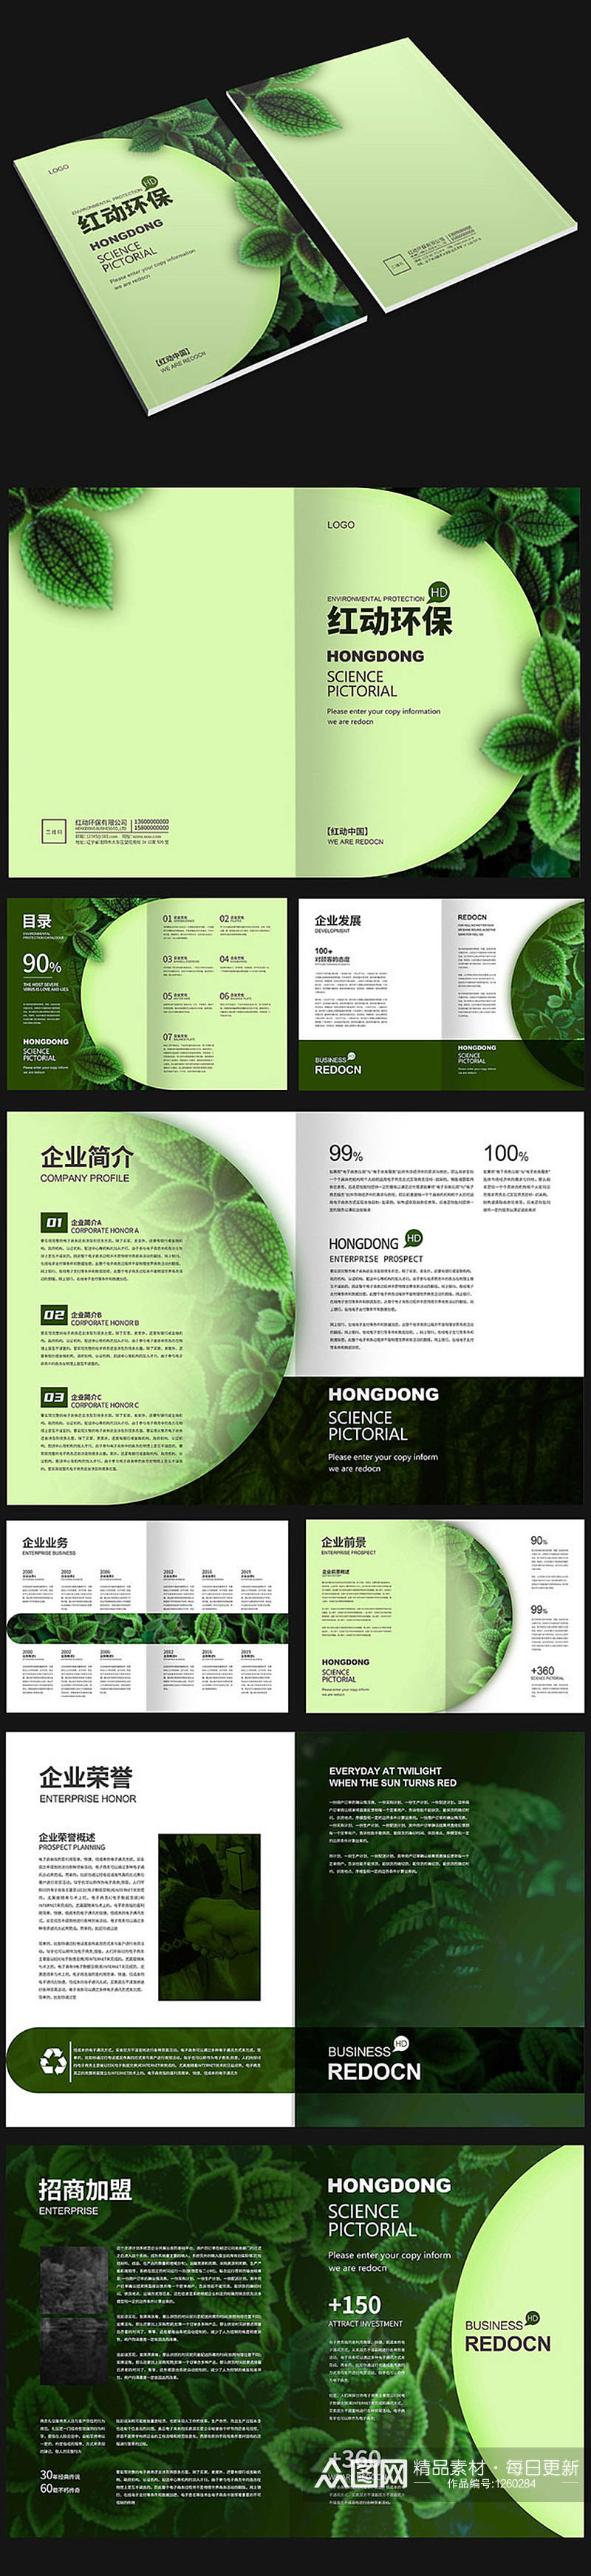 绿色环保画册设计排版素材